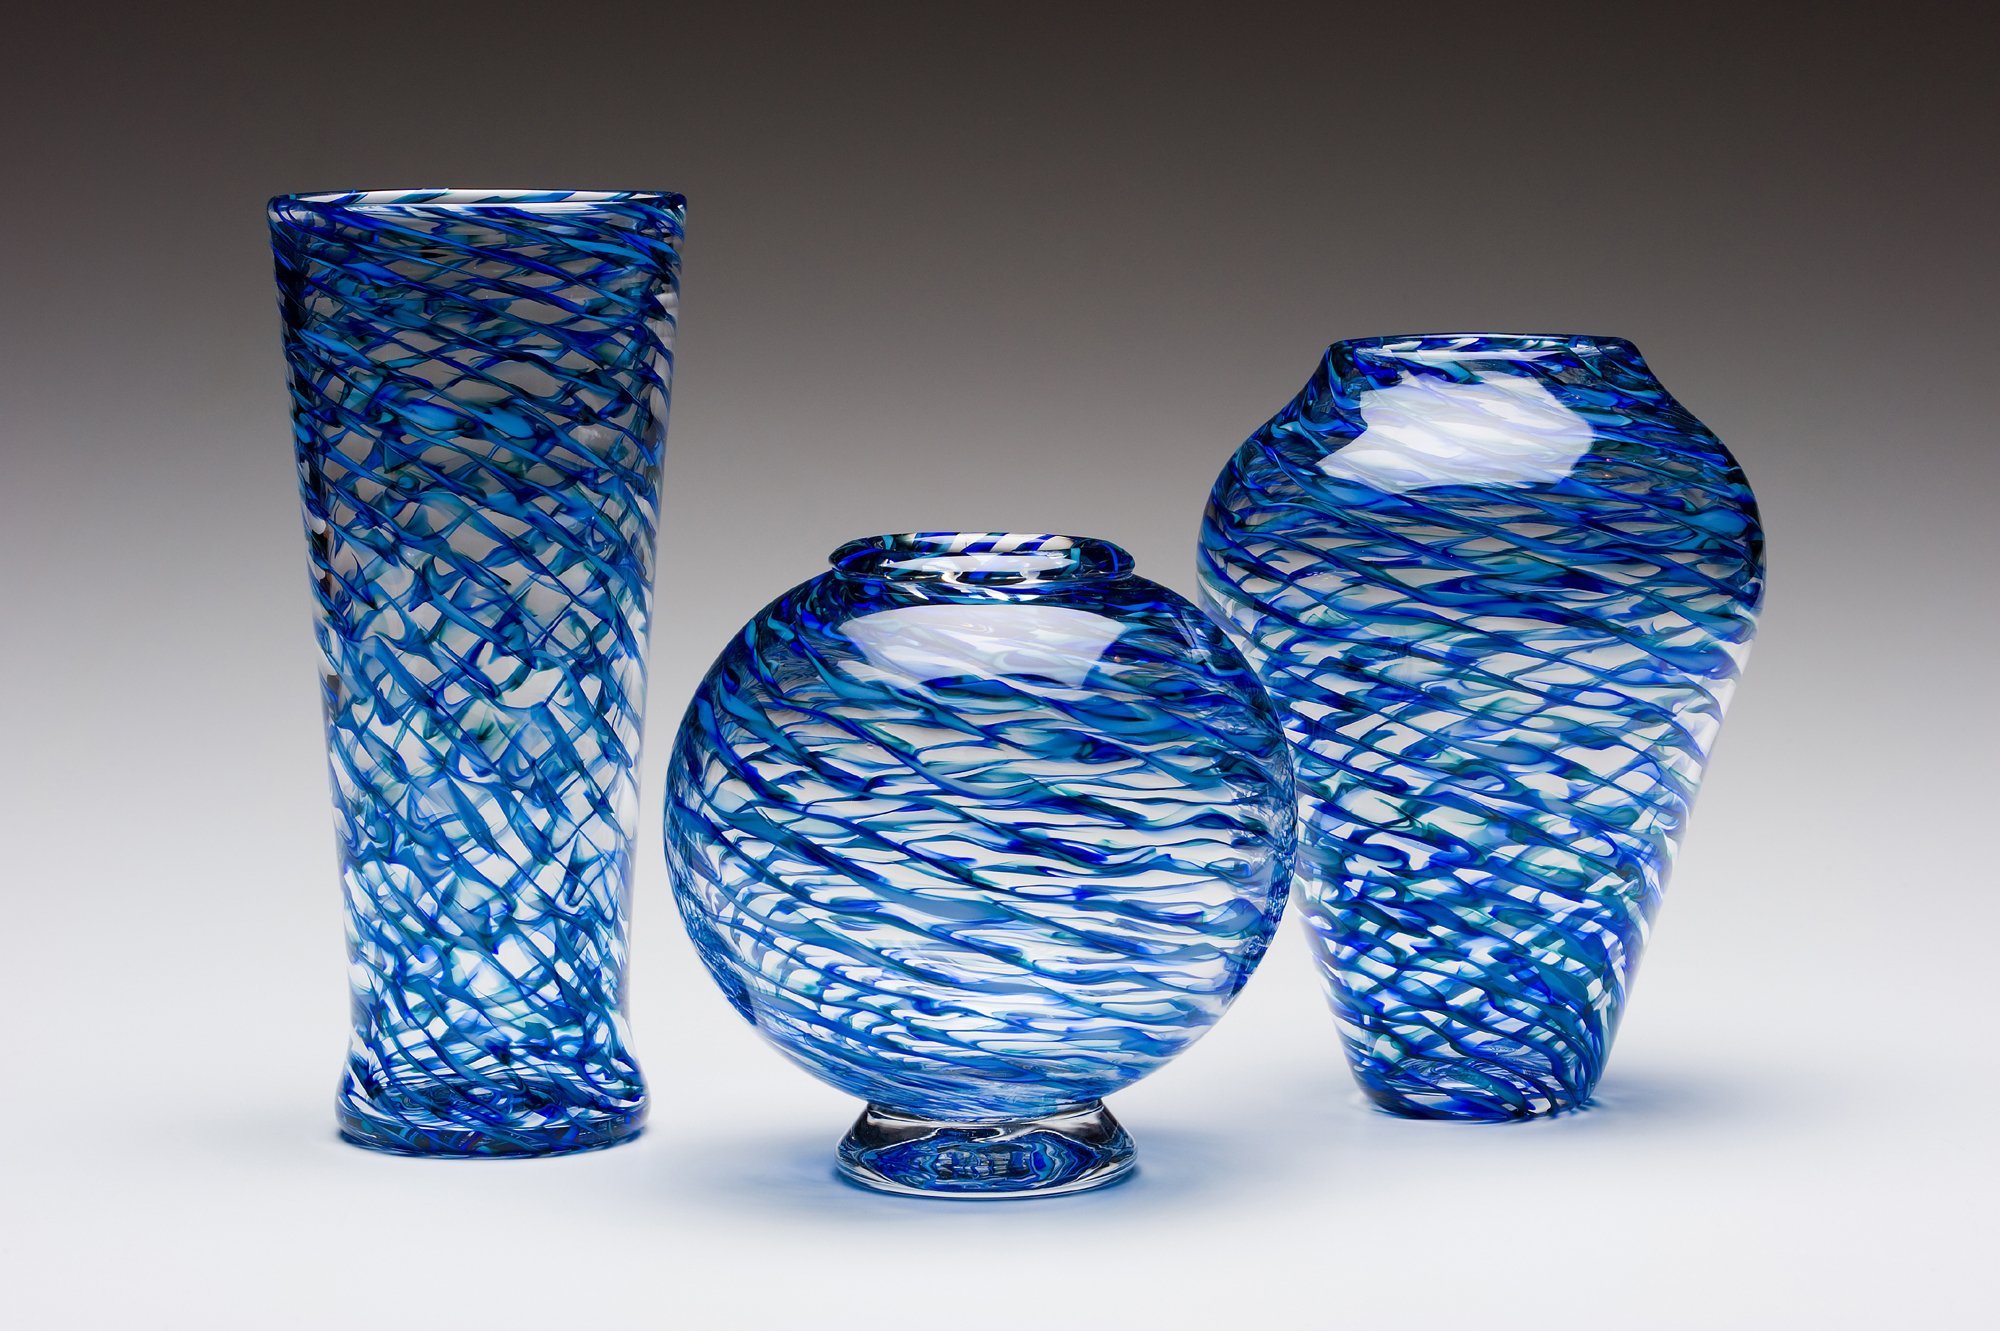 Цветной ваза. Glass Vase ваза. Ваза Blue Glass Vase. Ваза PARTGLASS 17102/0150/AA-0001 стекло. Стеклянная ваза Кенни.